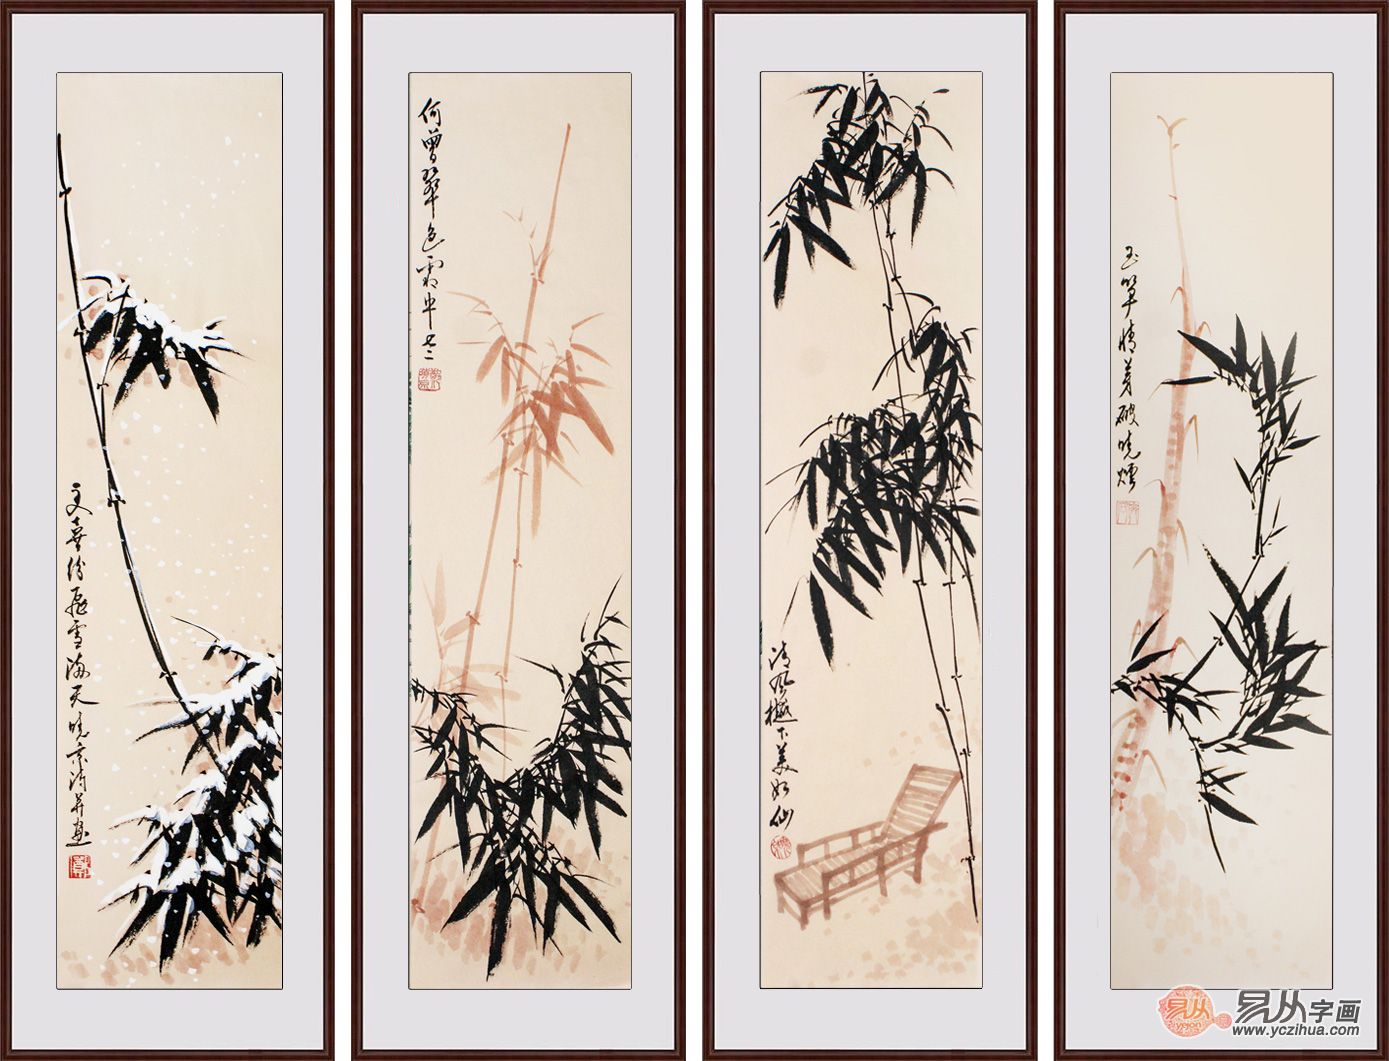 字画收藏 郑晓京老师写意四条屏国画《竹子四条屏》